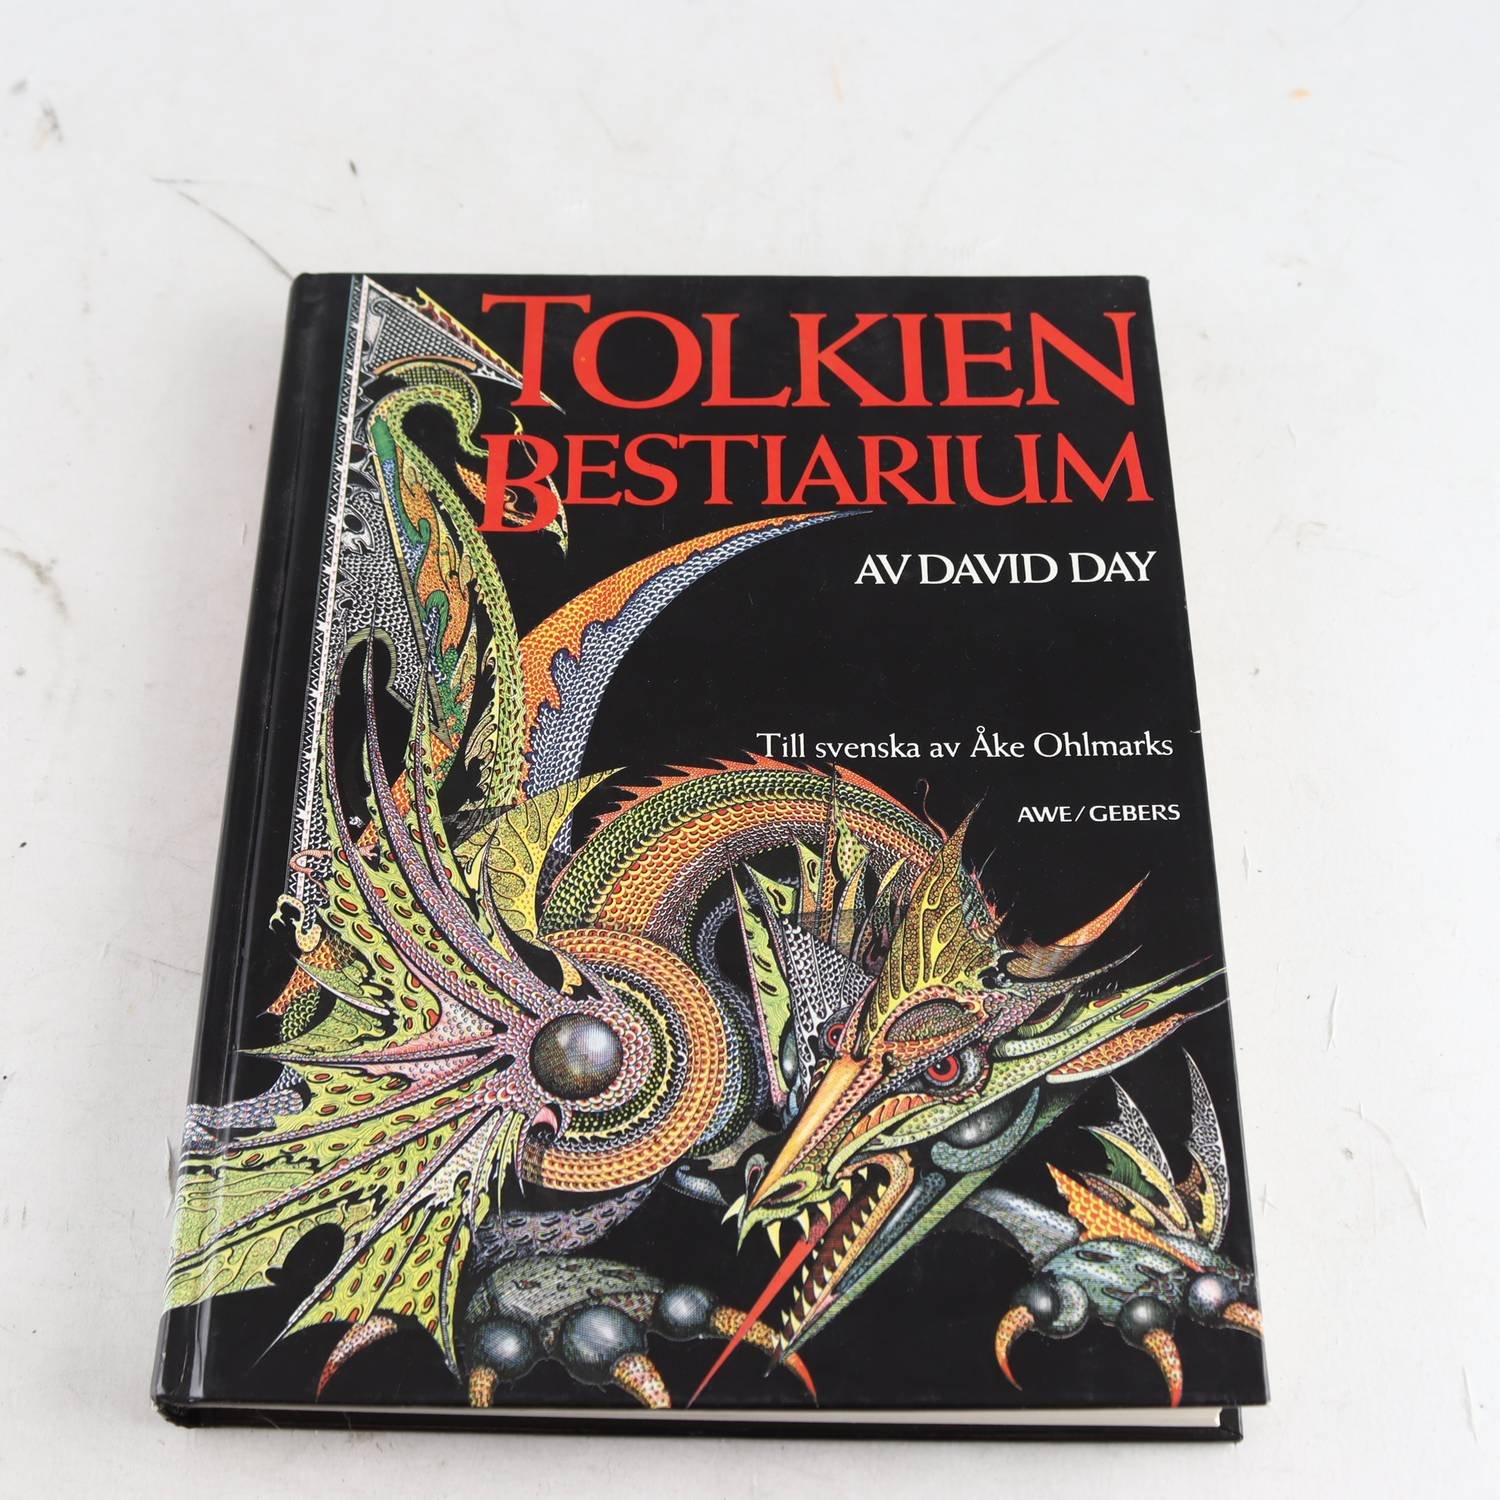 Tolkien Bestiarium, av David Day, Till svenska av Åke Ohlmarks